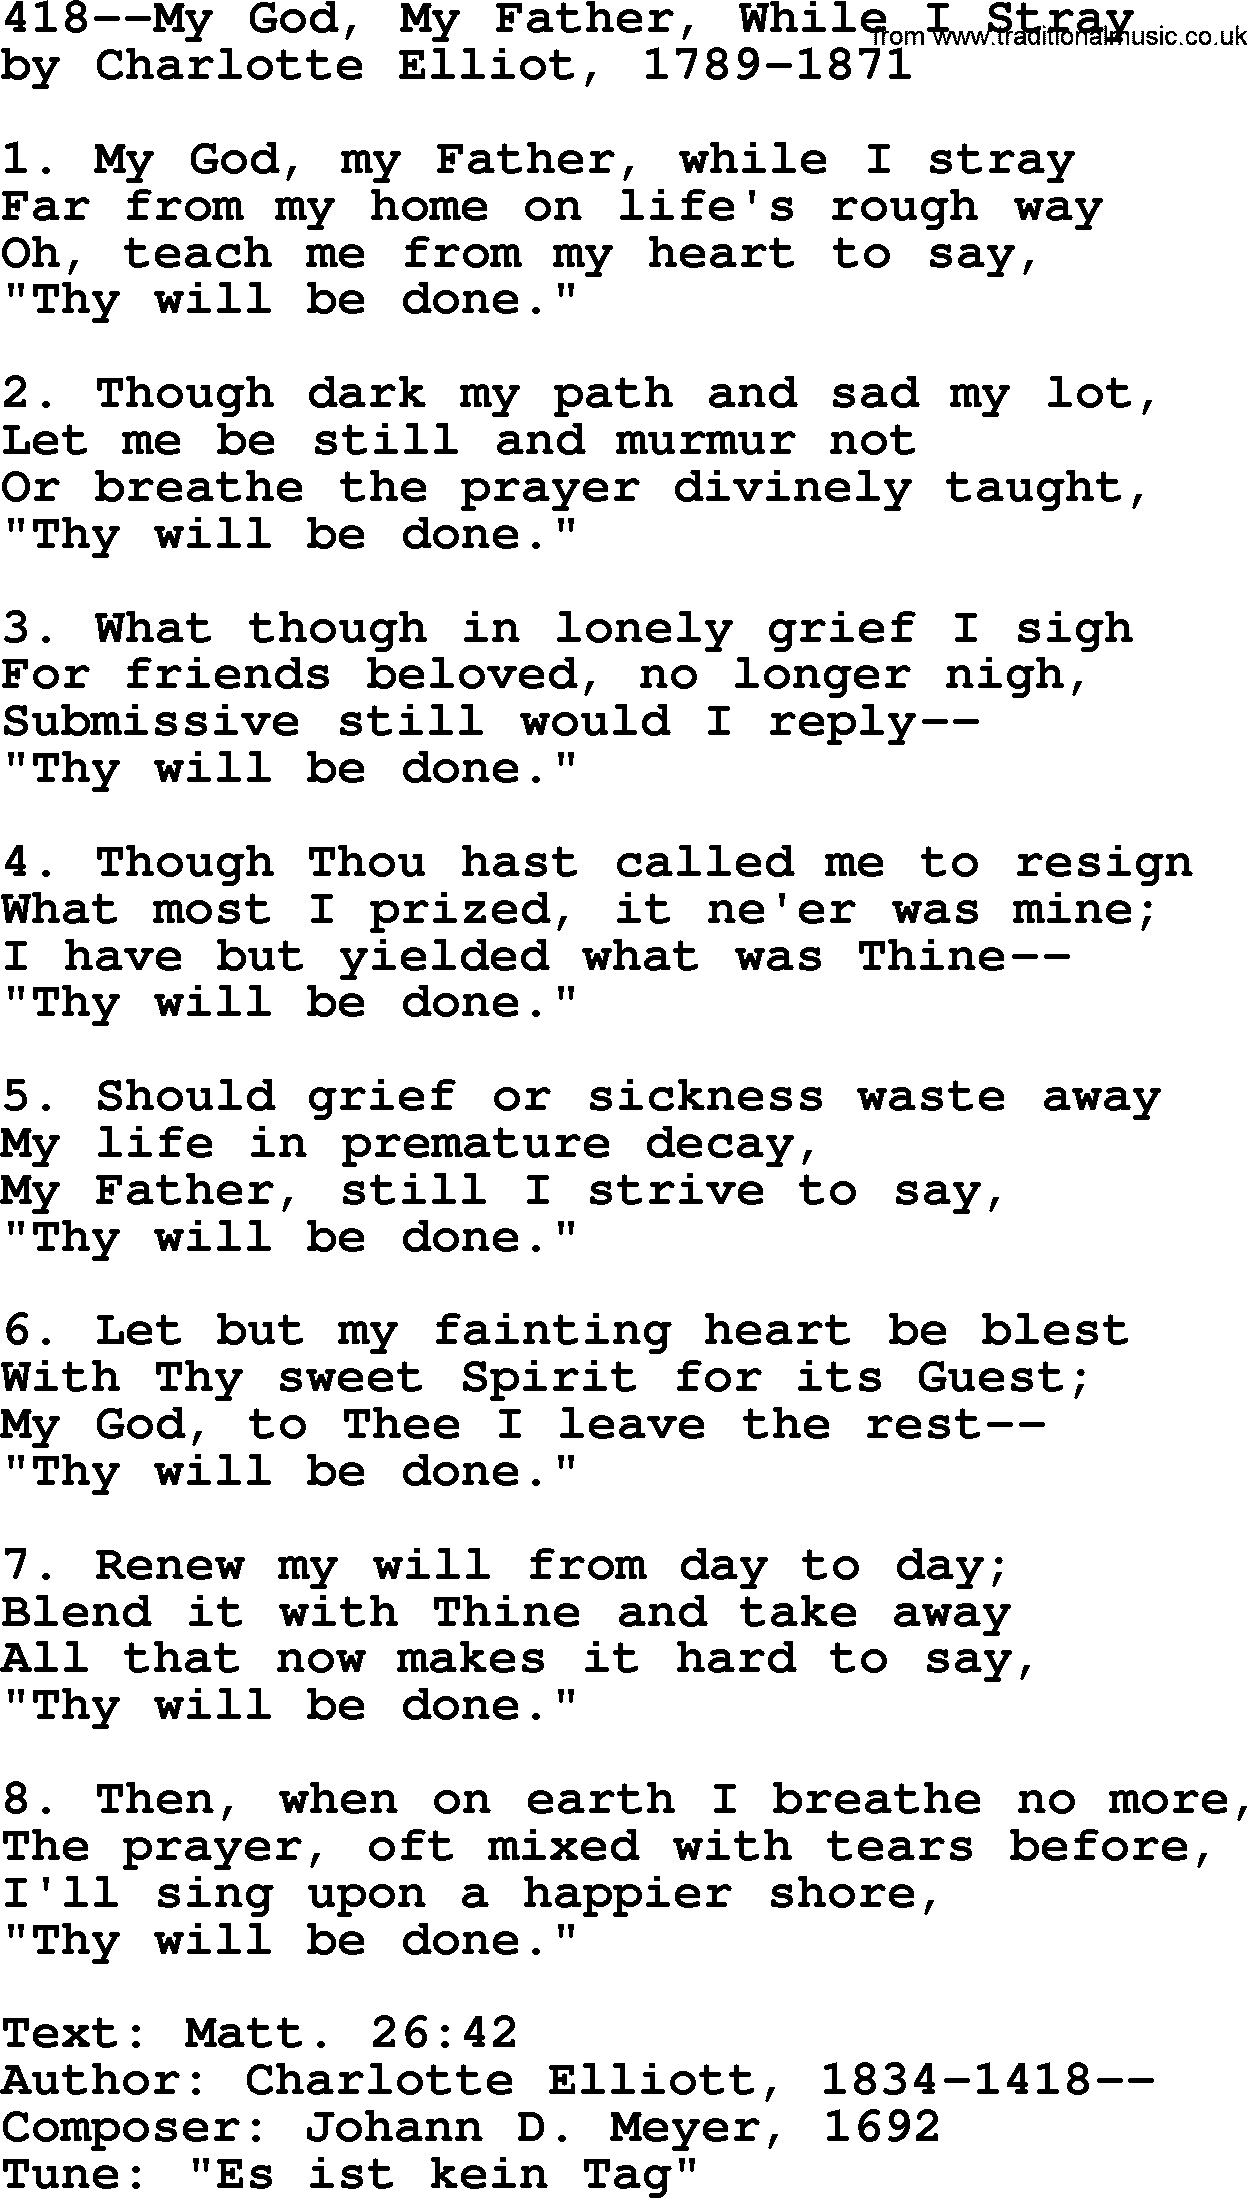 Lutheran Hymn: 418--My God, My Father, While I Stray.txt lyrics with PDF